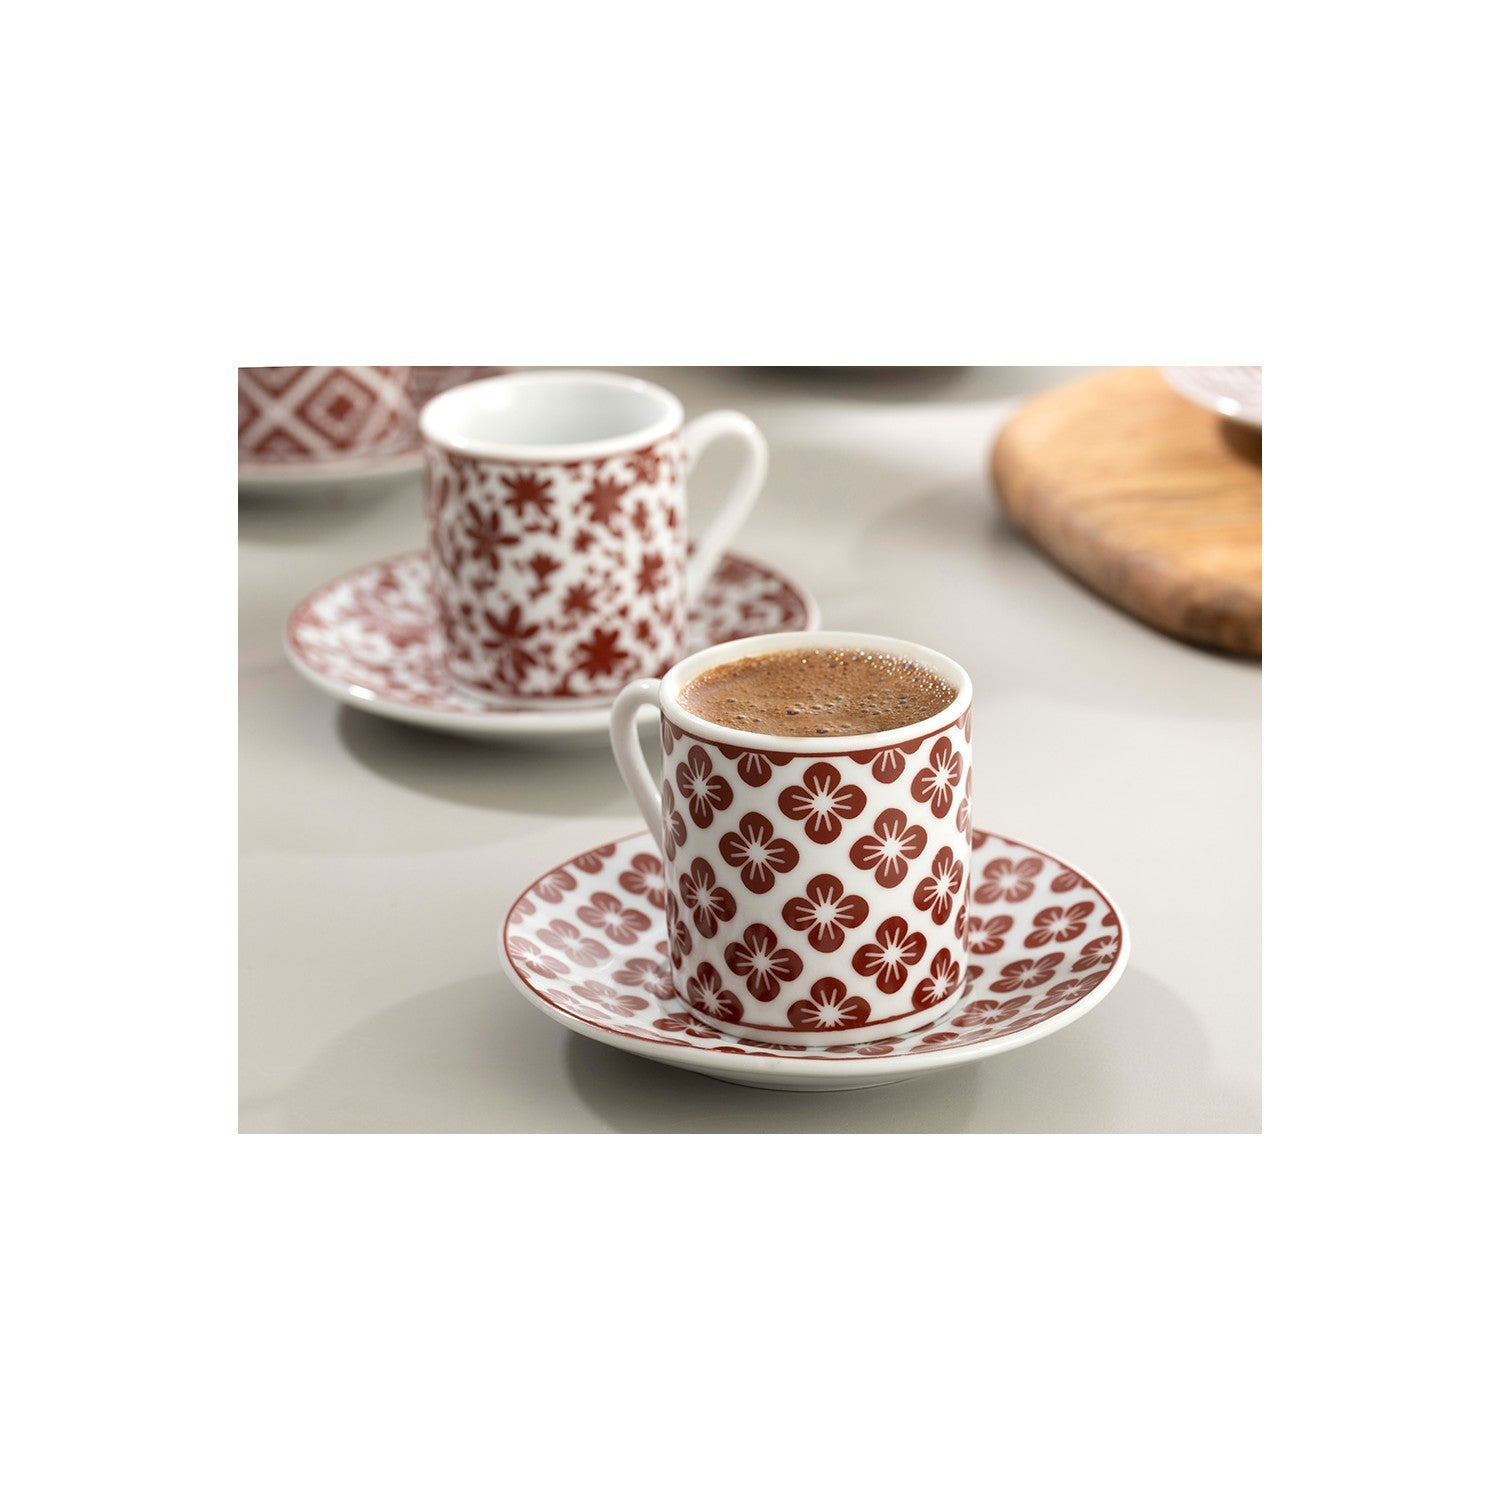 Turkish Tea/Coffee Set